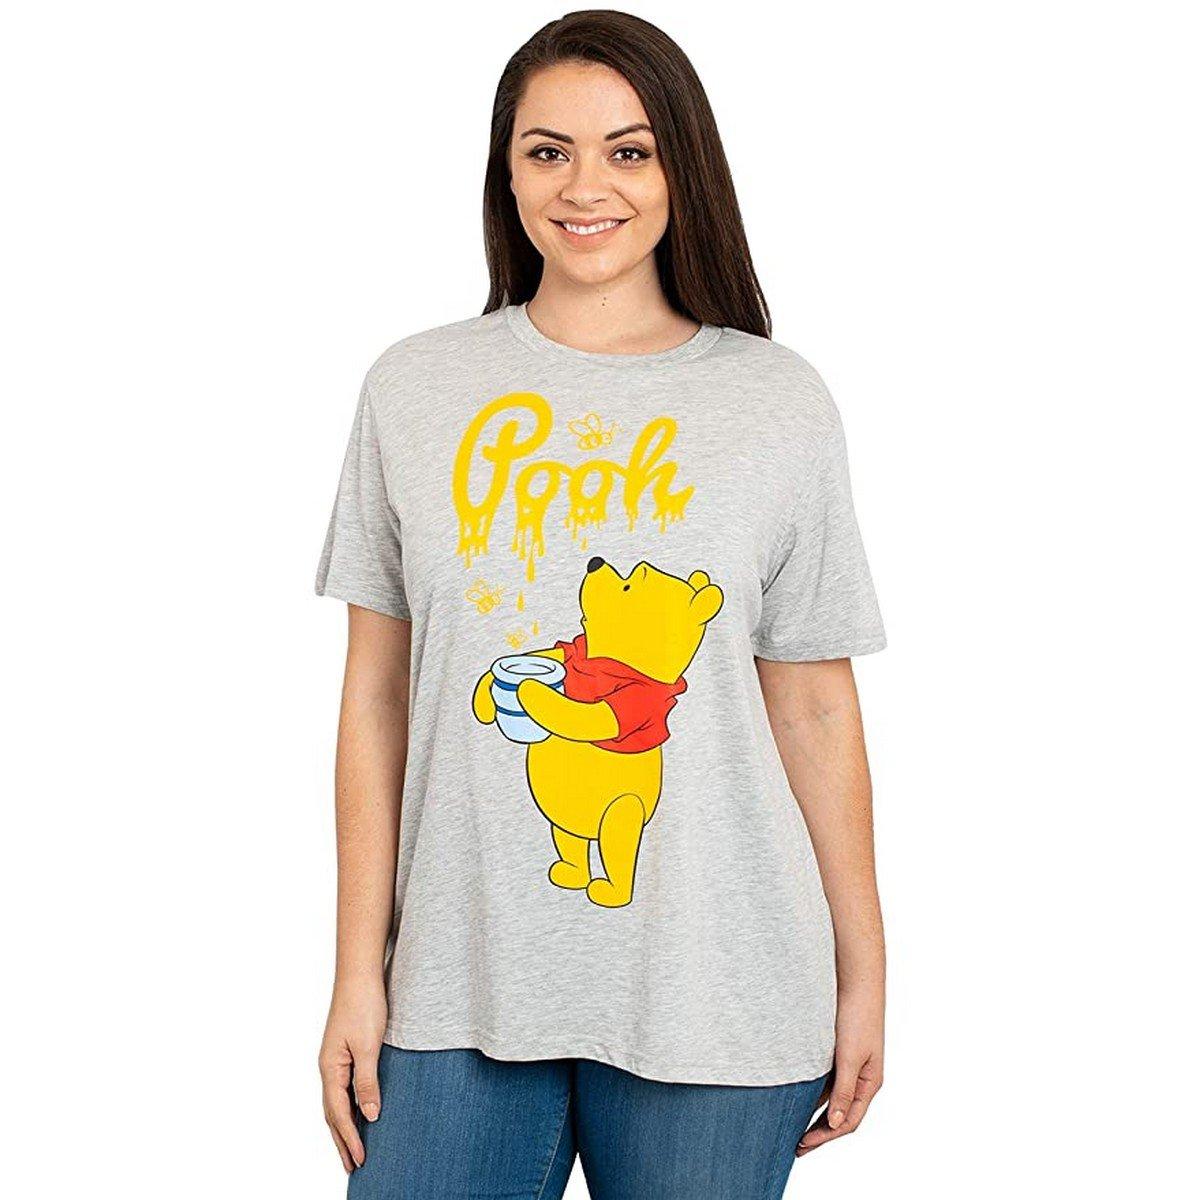 Tshirt Damen Grau S von Winnie the Pooh